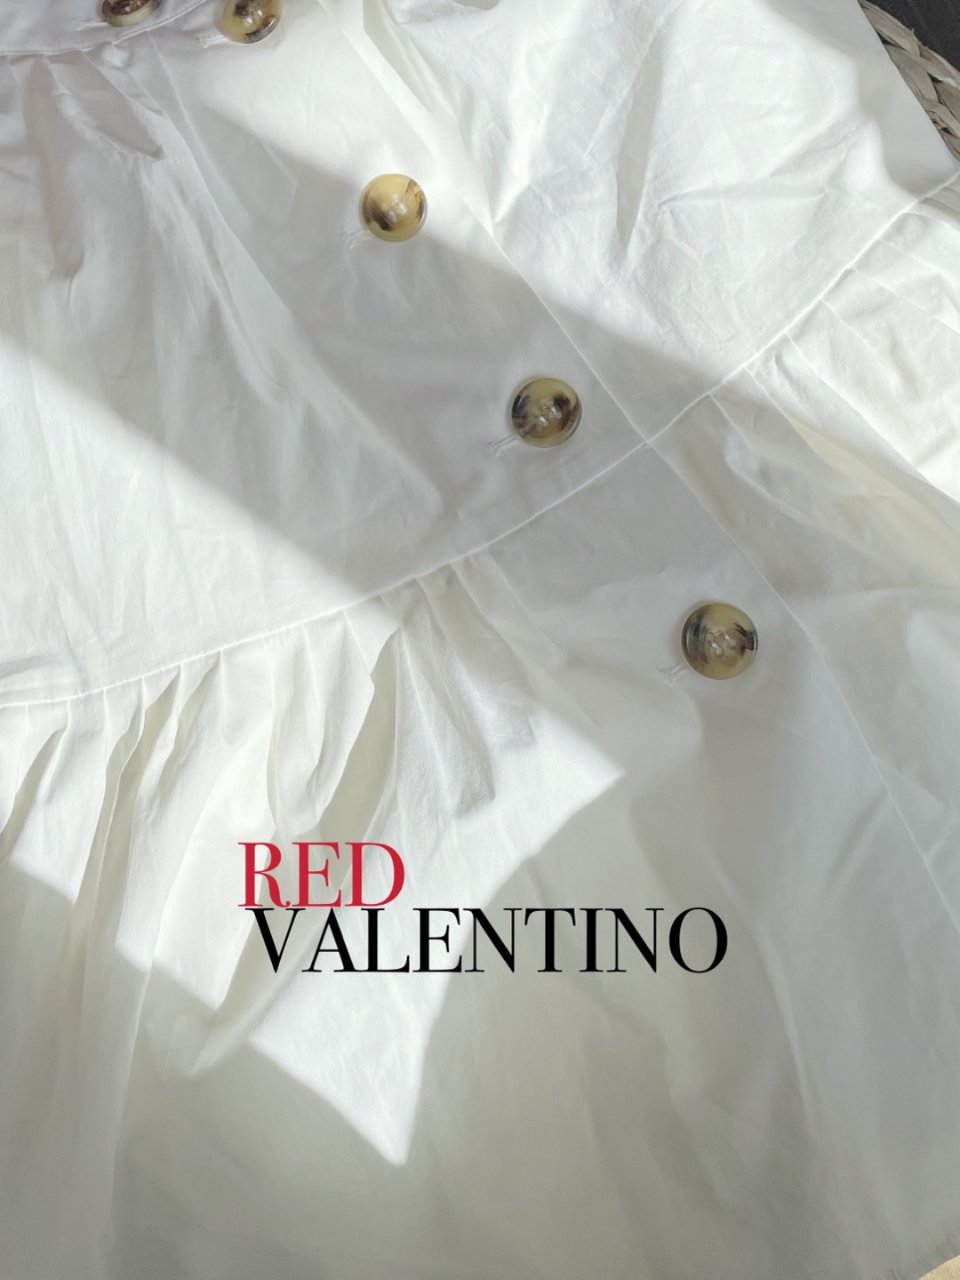 RED VALENTINO 小白裙子到啦...